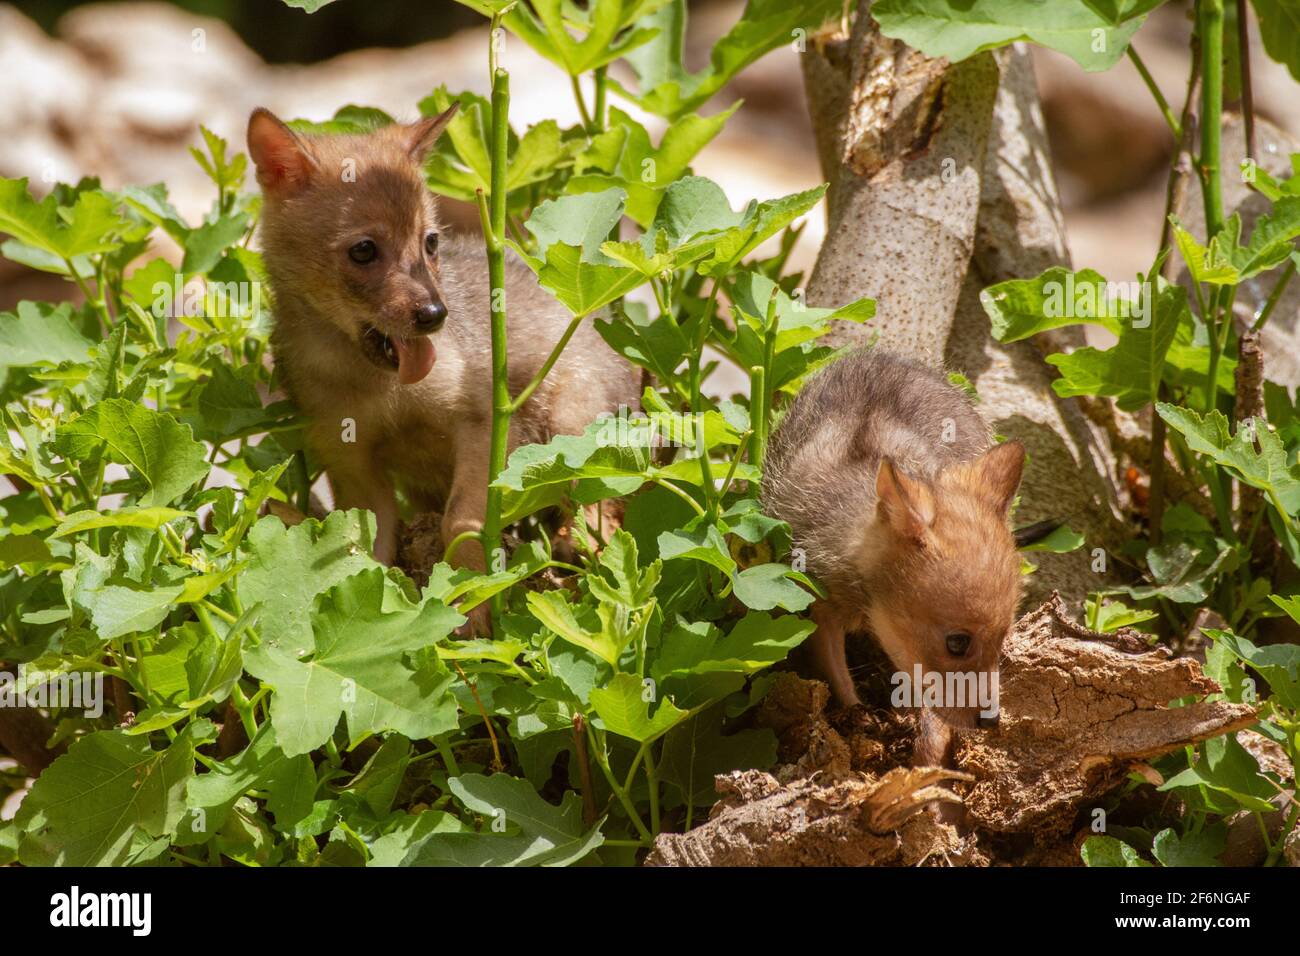 Cubs curieux d'un Jackal d'or (Canis aureus), également appelé le jeu asiatique, oriental ou commun Jackal près de leur den. Photographié en Israël en juin Banque D'Images